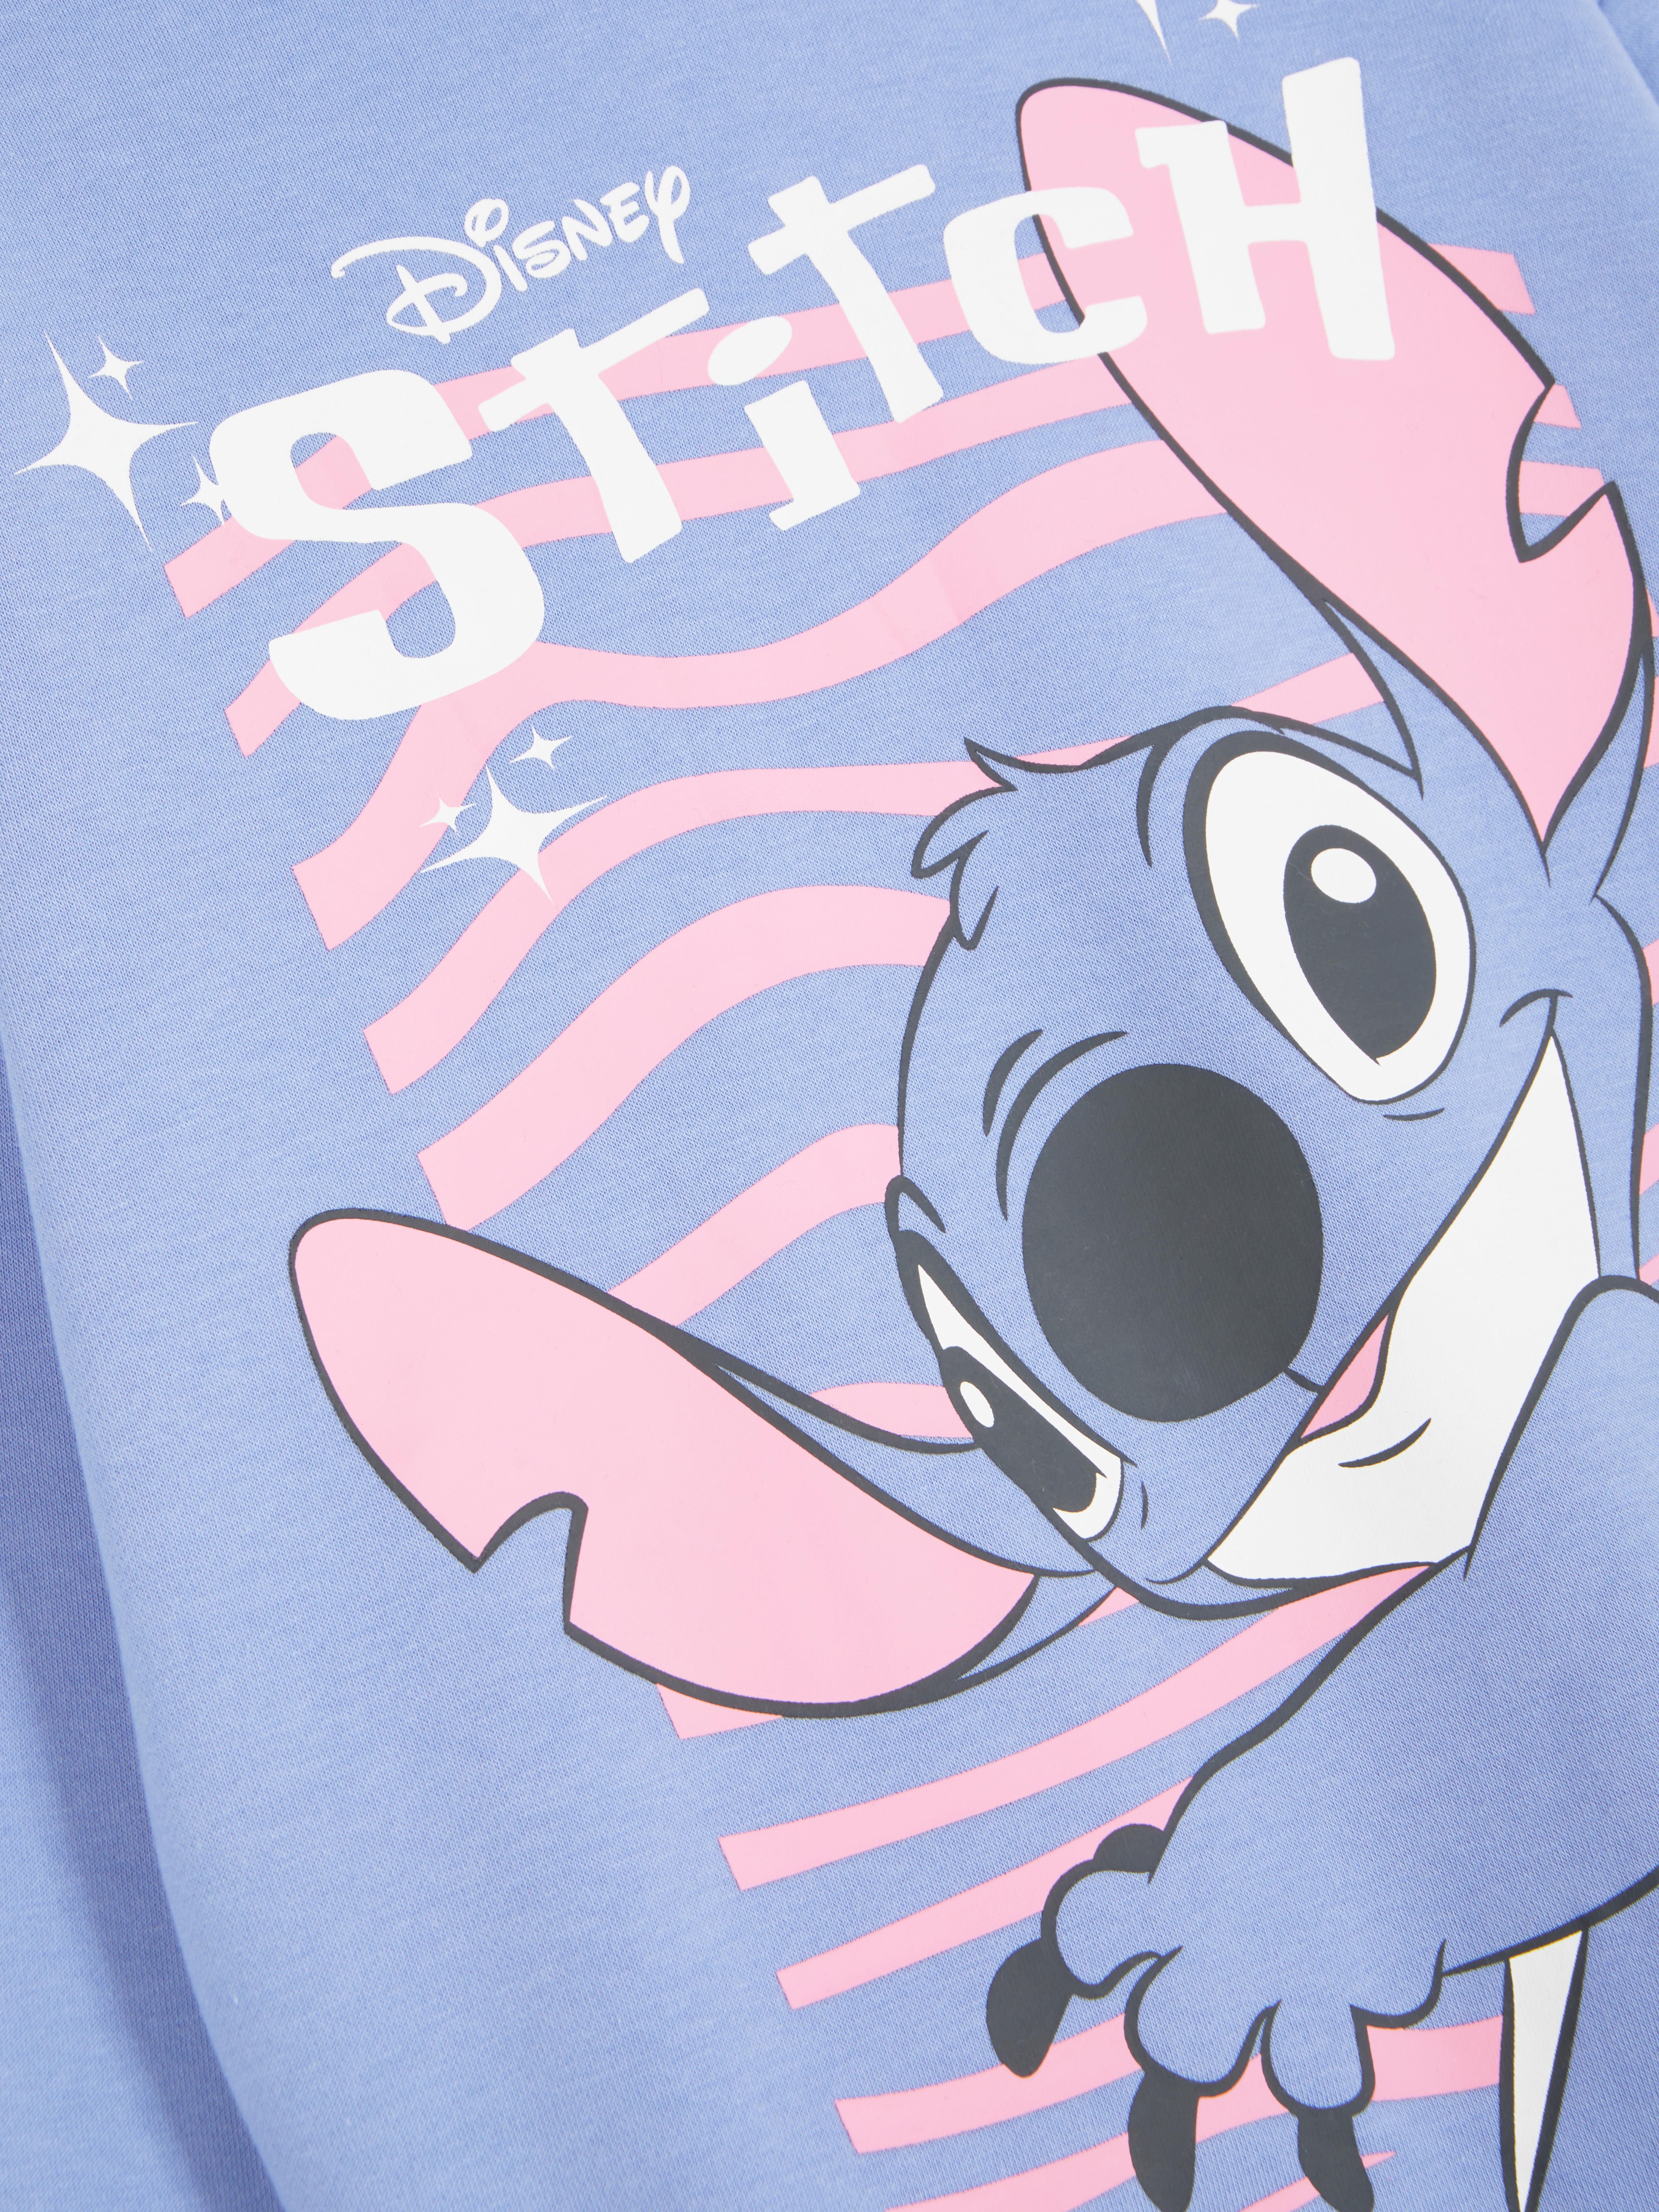 Stitch, Lilo & Stitch Sweat-shirt à capuche